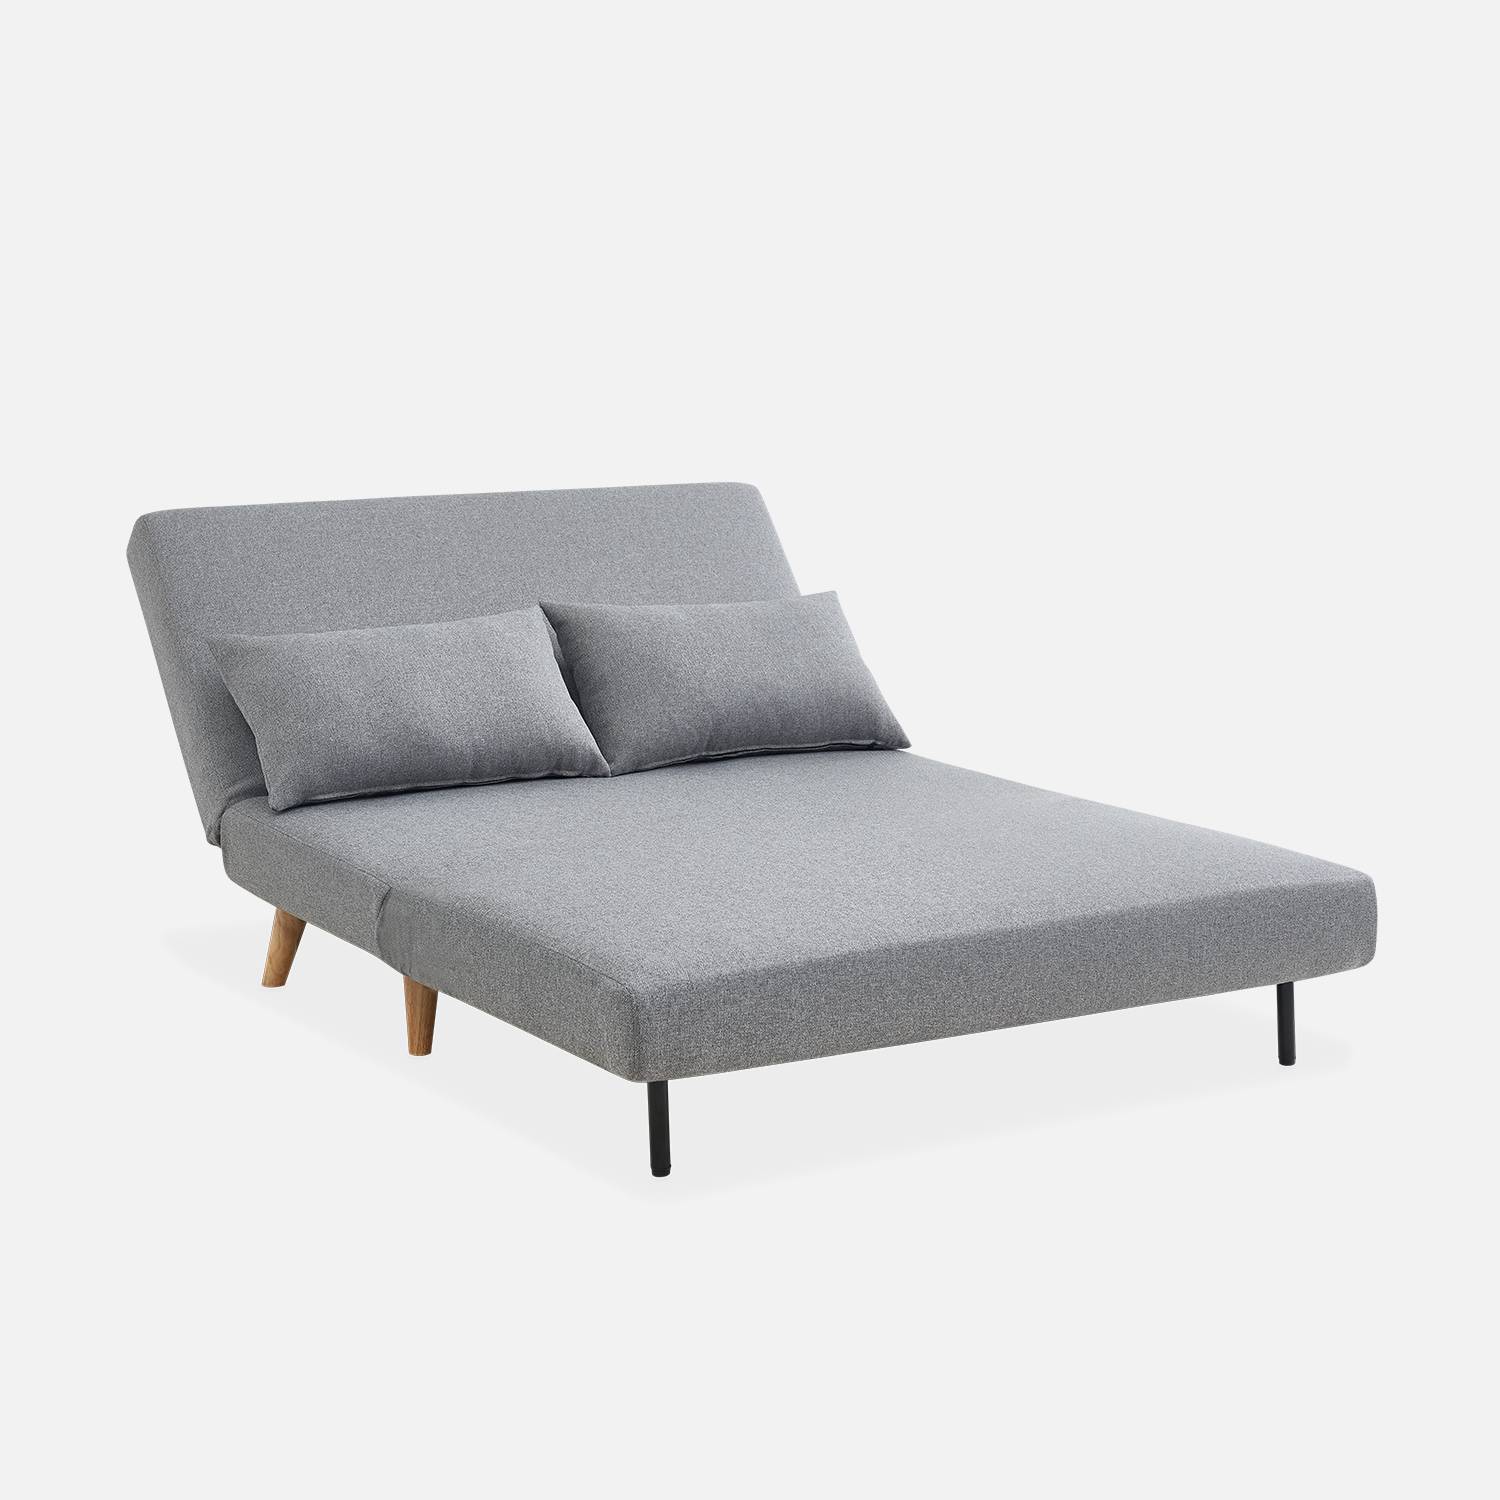 Sofá cama de tela - Guesta - Escandinavo de 2 plazas, patas de madera oscura, gris claro, asiento corrido, respaldo reclinable,sweeek,Photo6